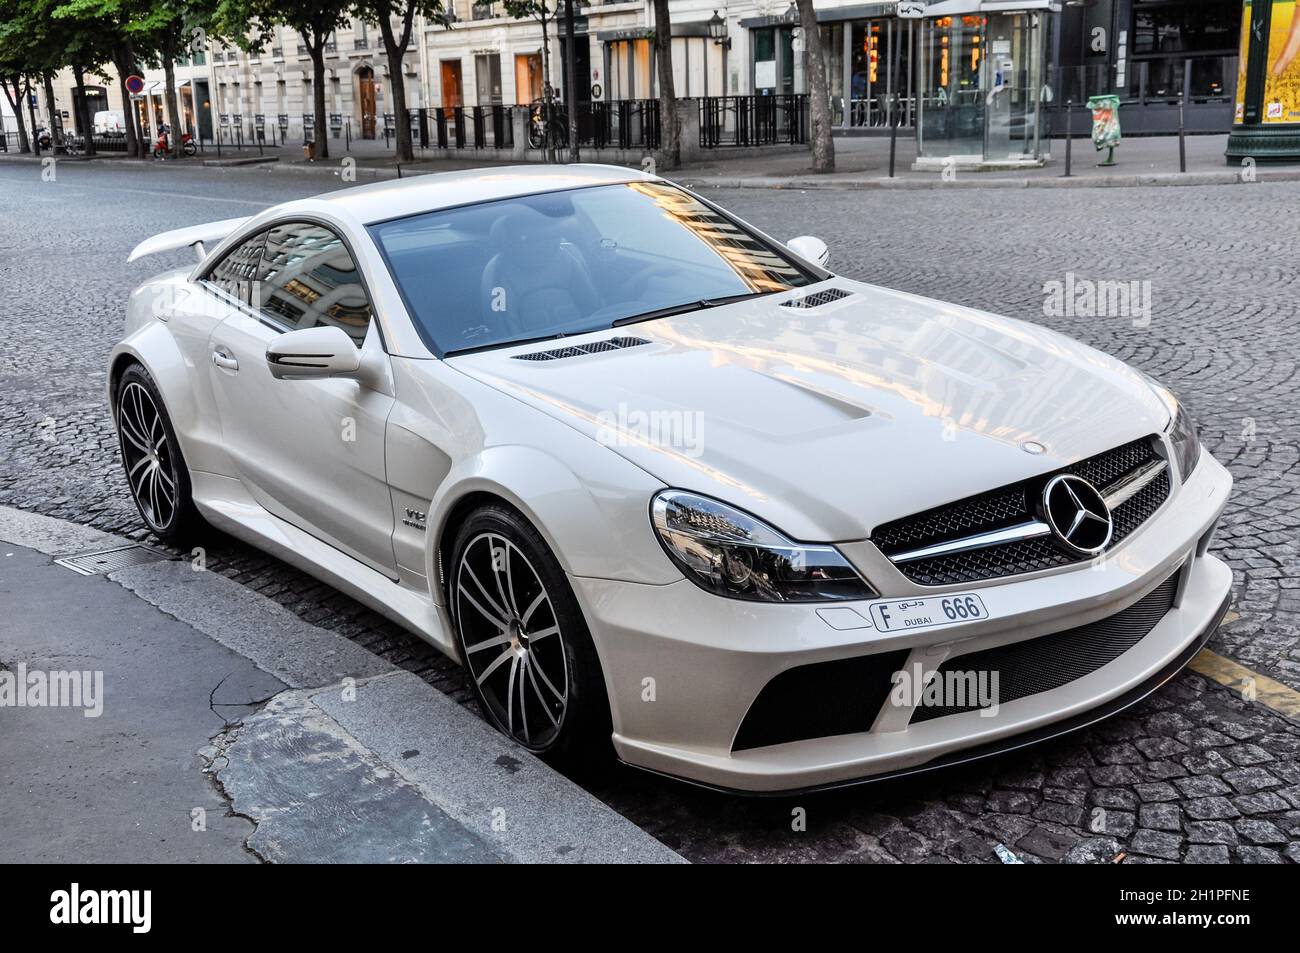 Mercedes Sl 65 Amg Stockfotos und -bilder Kaufen - Alamy